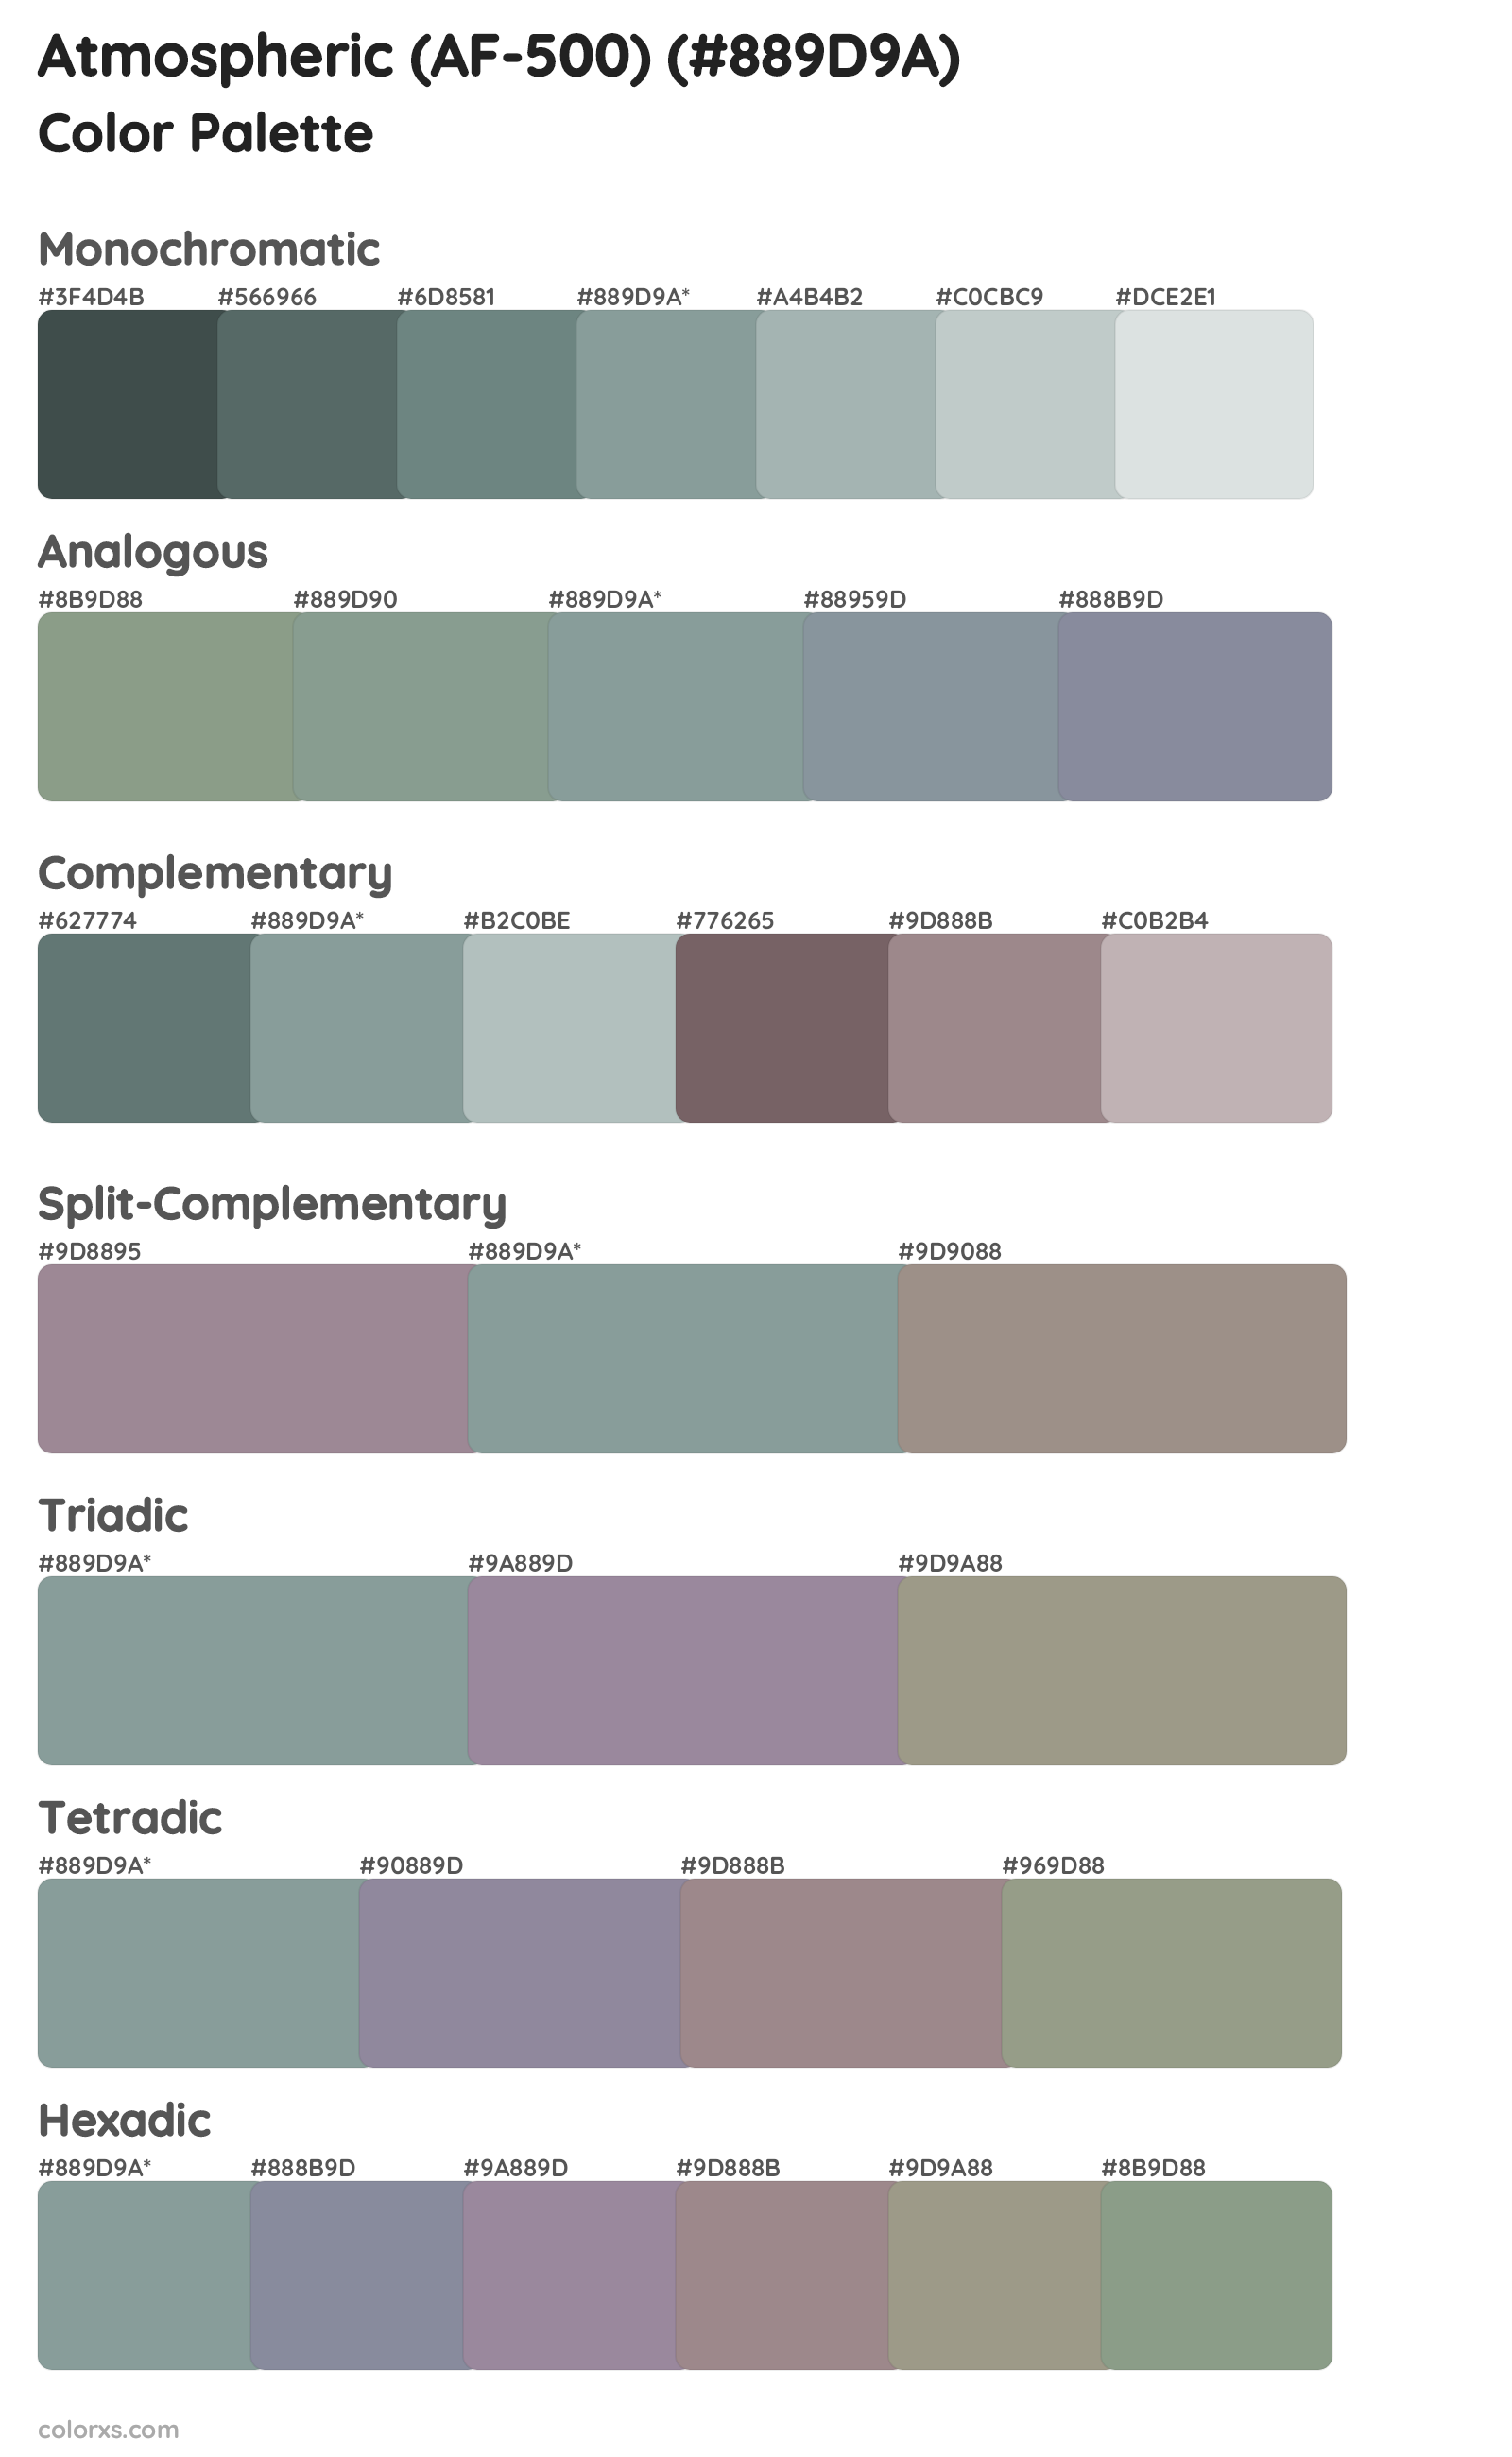 Atmospheric (AF-500) Color Scheme Palettes